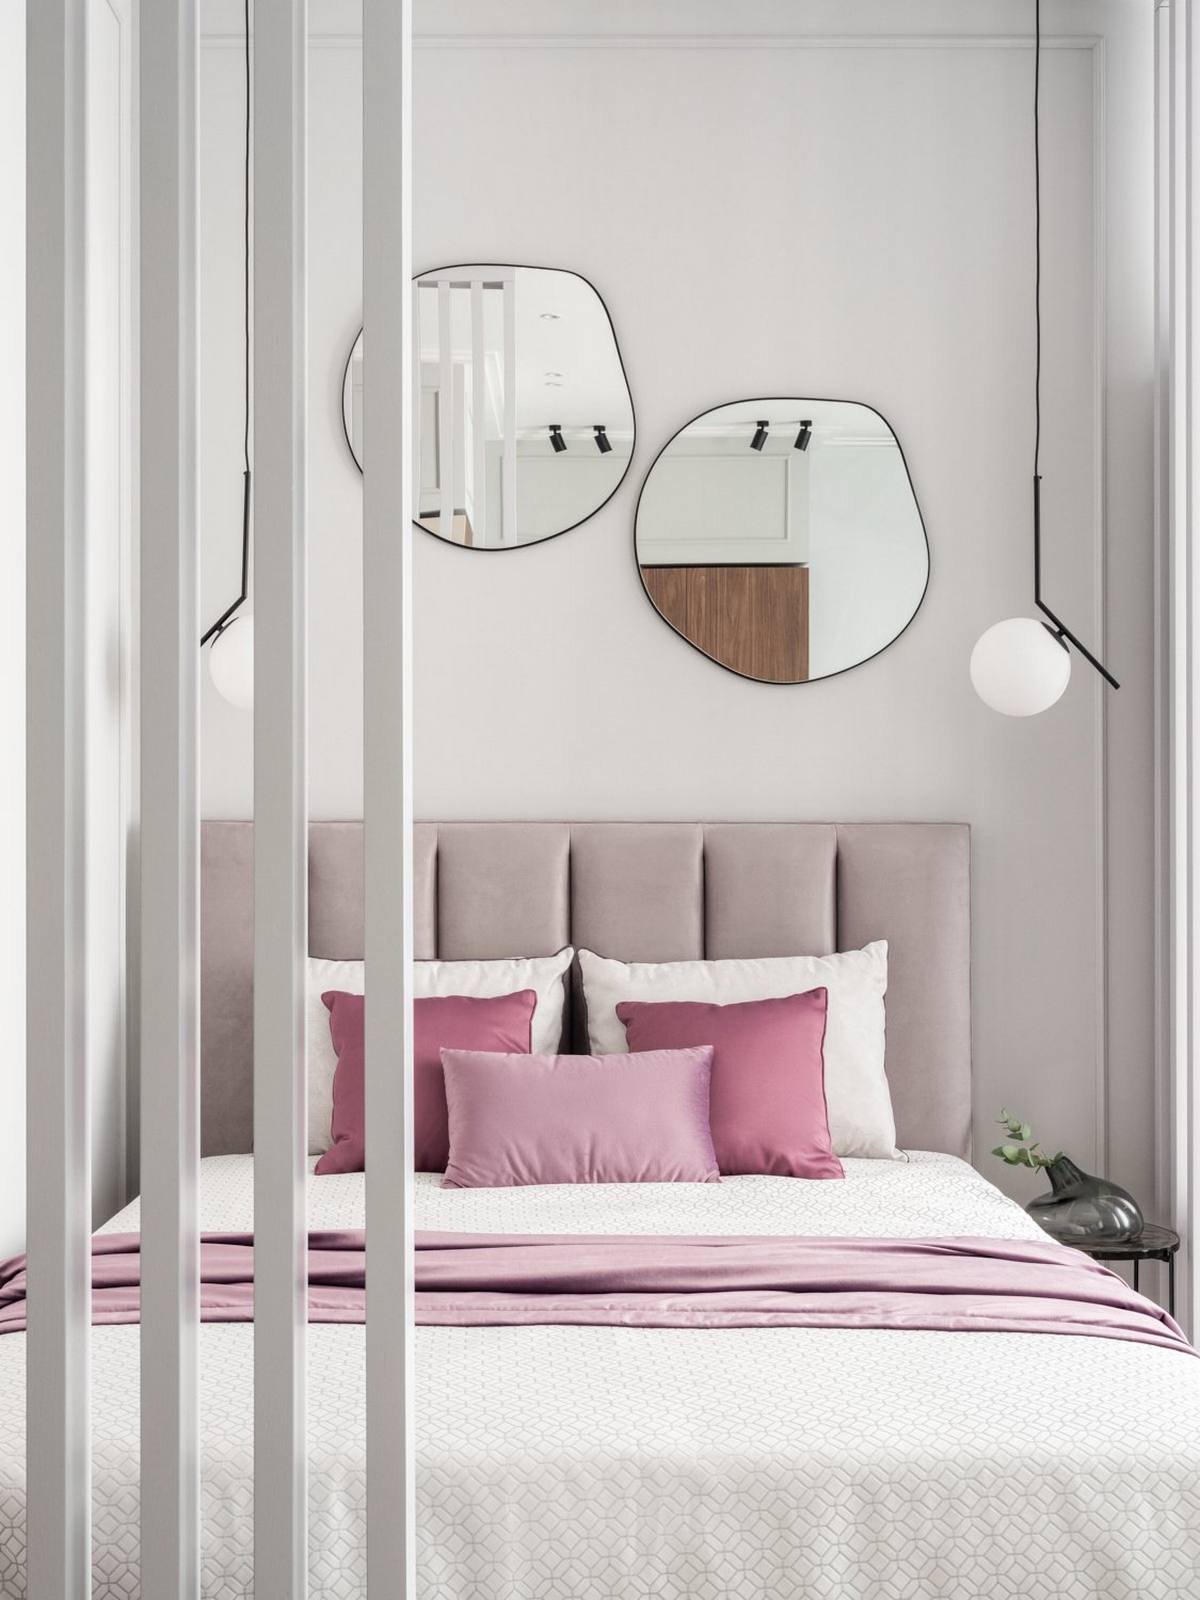 Đầu giường bọc nệm vững chãi với màu xám thanh lịch, phối hợp với bộ chăn ga gối tông trắng và tím tạo sự liên kết về màu sắc với các khu vực còn lại trong căn hộ.